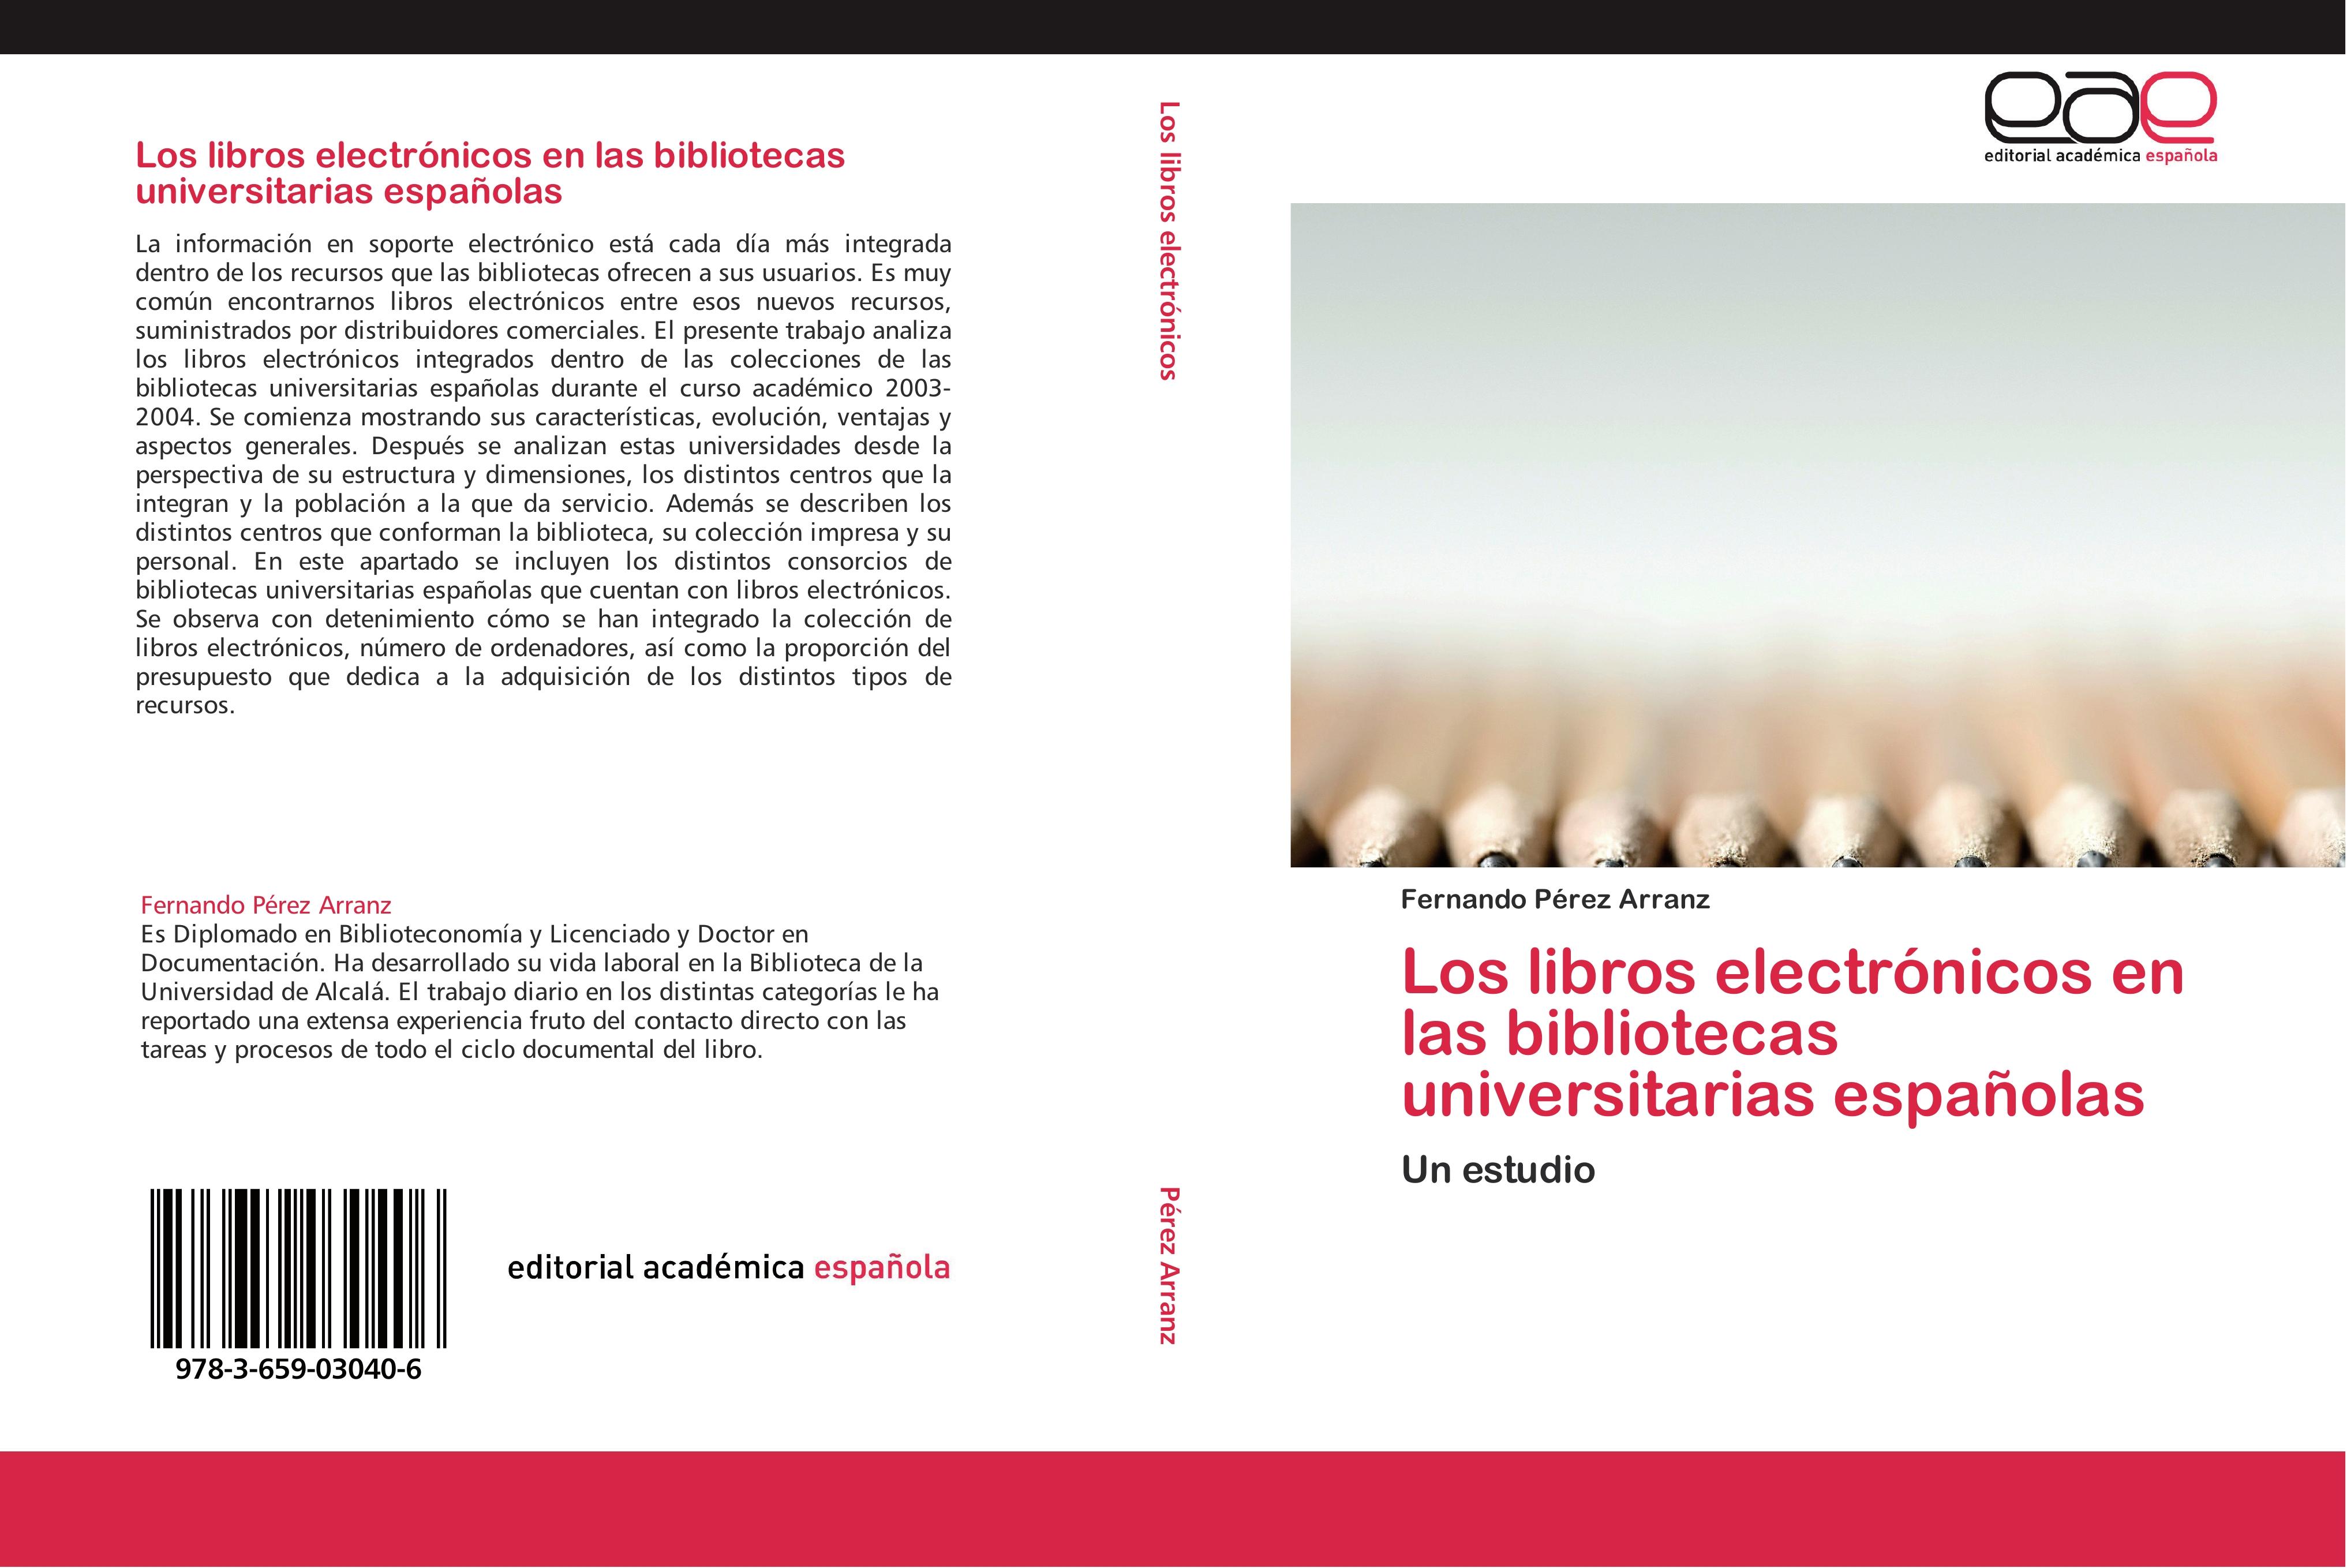 Los libros electrónicos en las bibliotecas universitarias españolas - Fernando Pérez Arranz